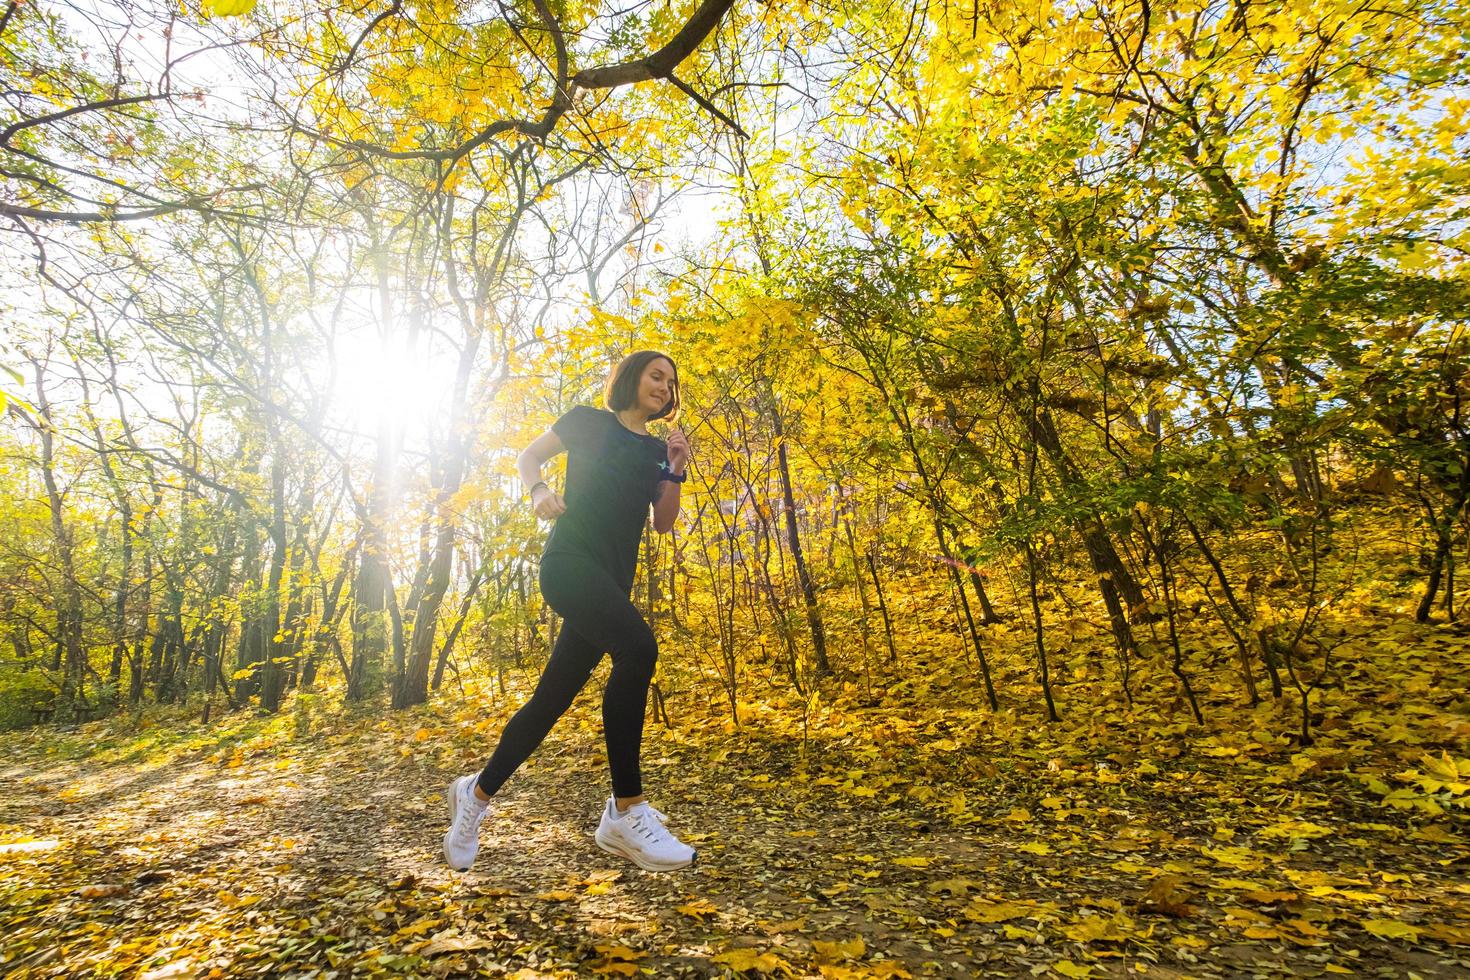 junge glückliche Frau Läufertraining im sonnigen Herbstpark foto